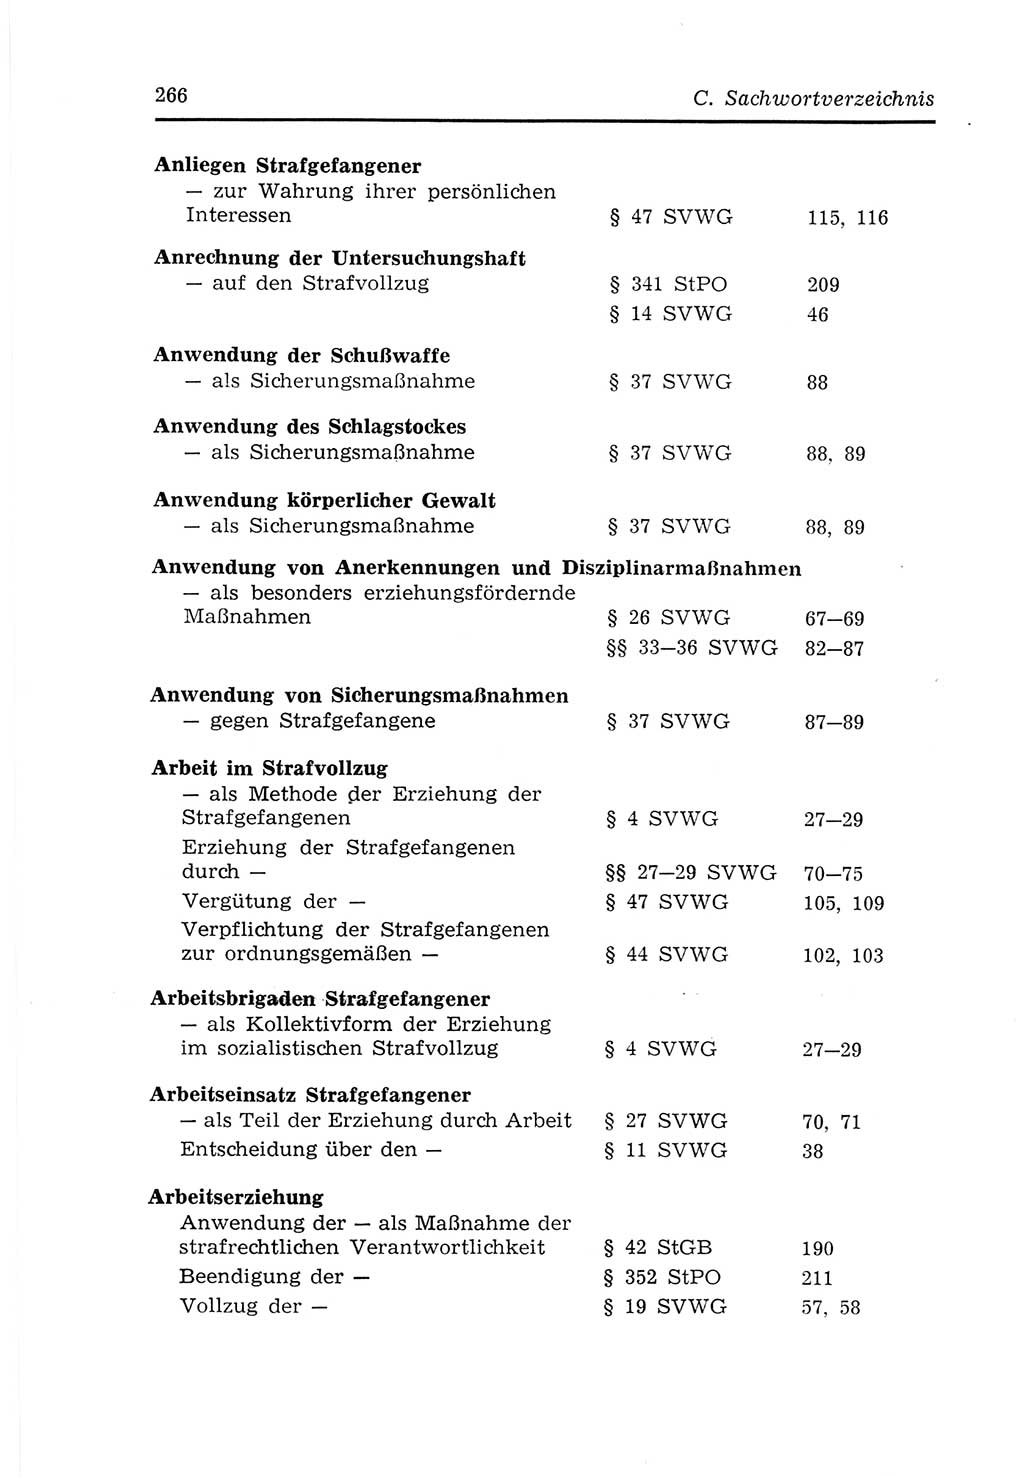 Strafvollzugs- und Wiedereingliederungsgesetz (SVWG) der Deutschen Demokratischen Republik (DDR) 1968, Seite 266 (SVWG DDR 1968, S. 266)